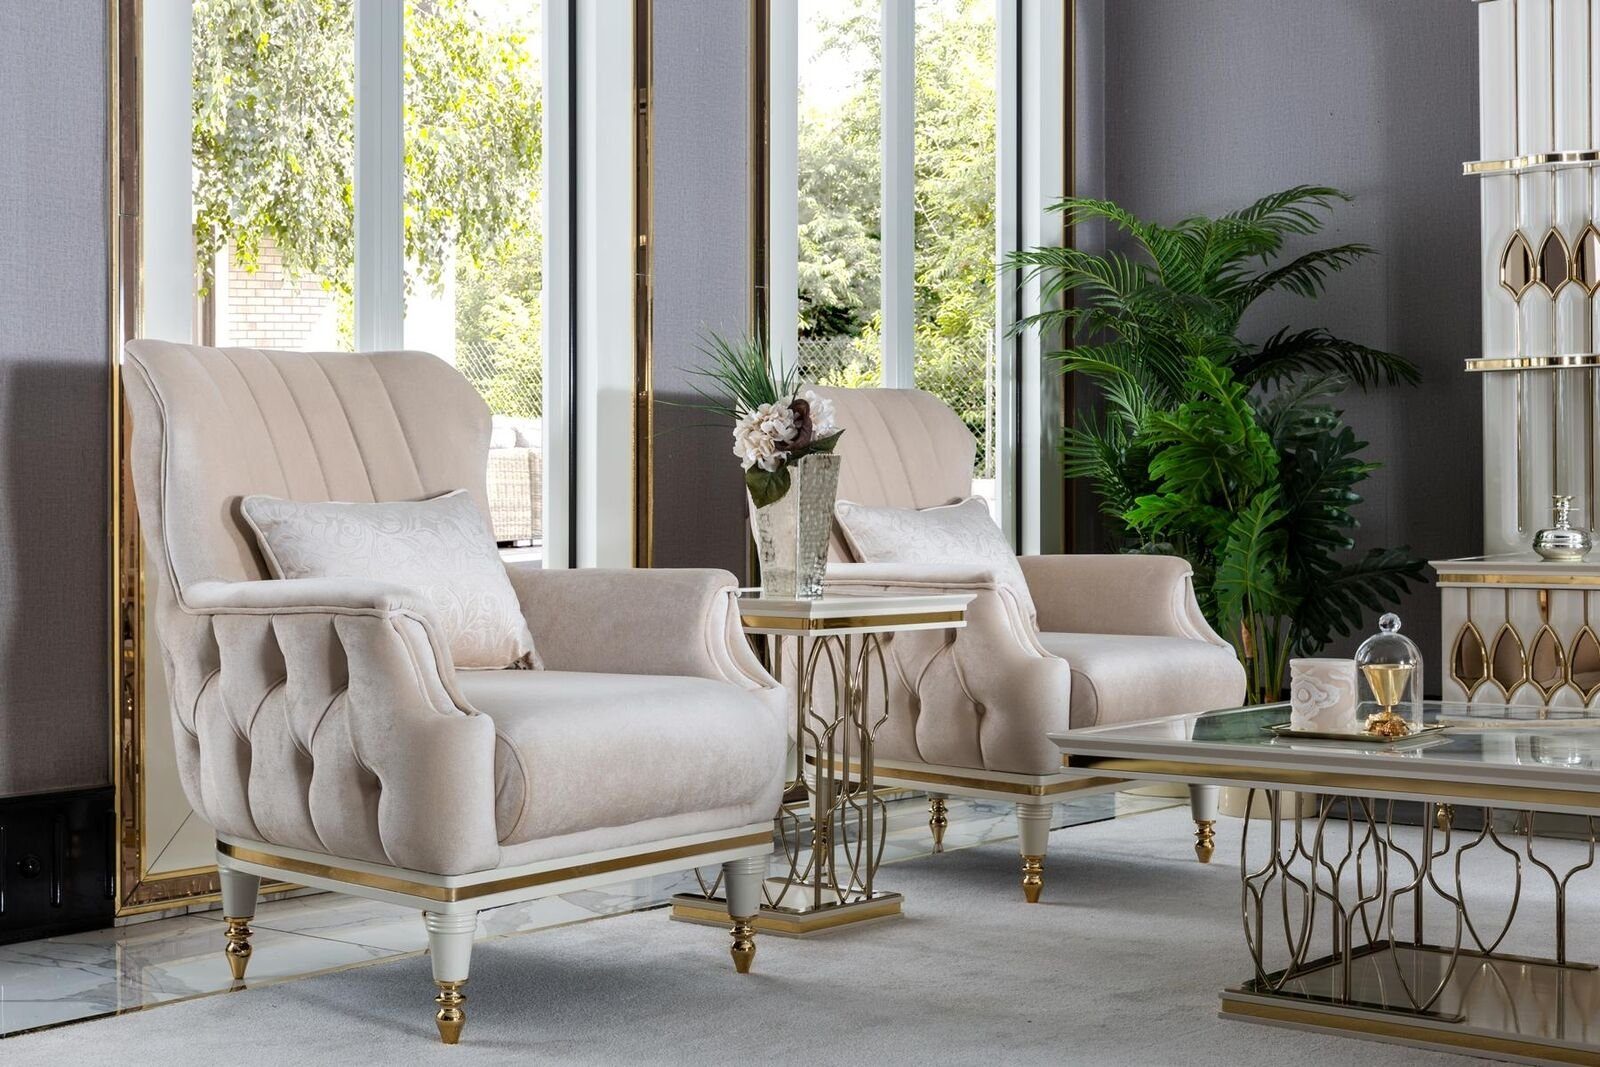 JVmoebel Beistelltisch Beistelltisch Weiß Couchtisch Luxus Wohnzimmer Metall Möbel Elegantes